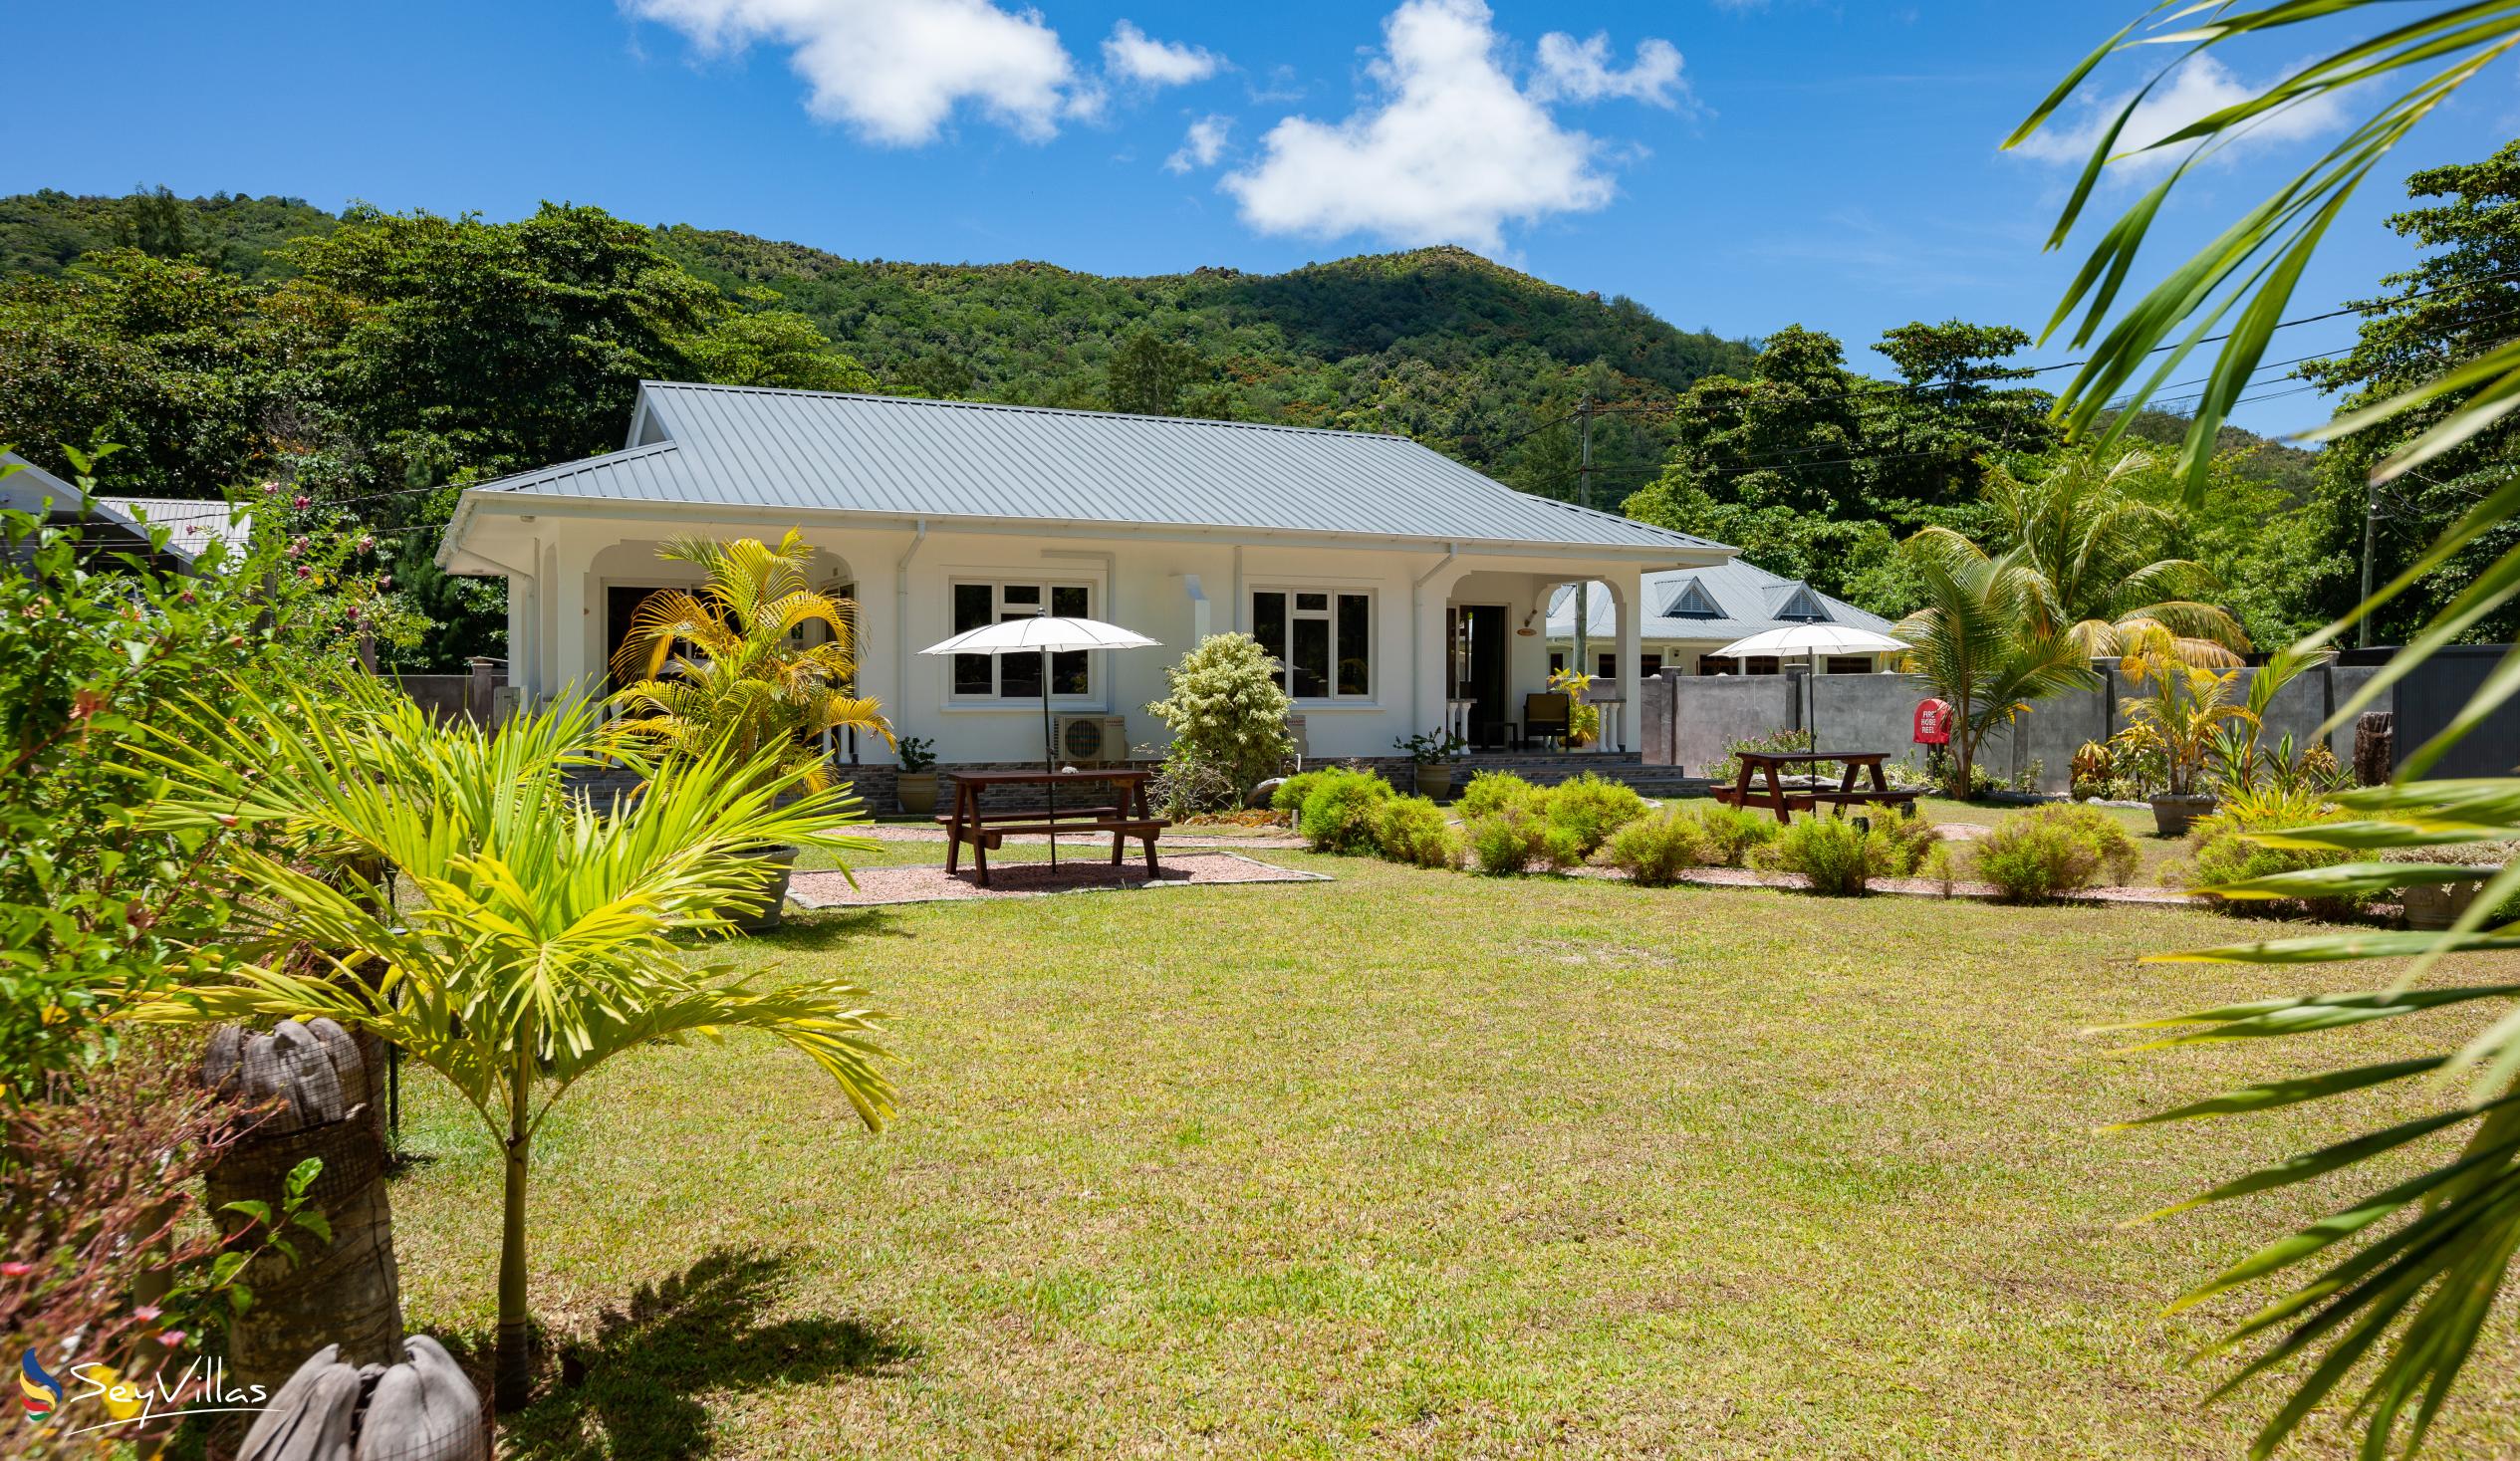 Foto 5: ANV Holiday Apartments - Aussenbereich - Praslin (Seychellen)